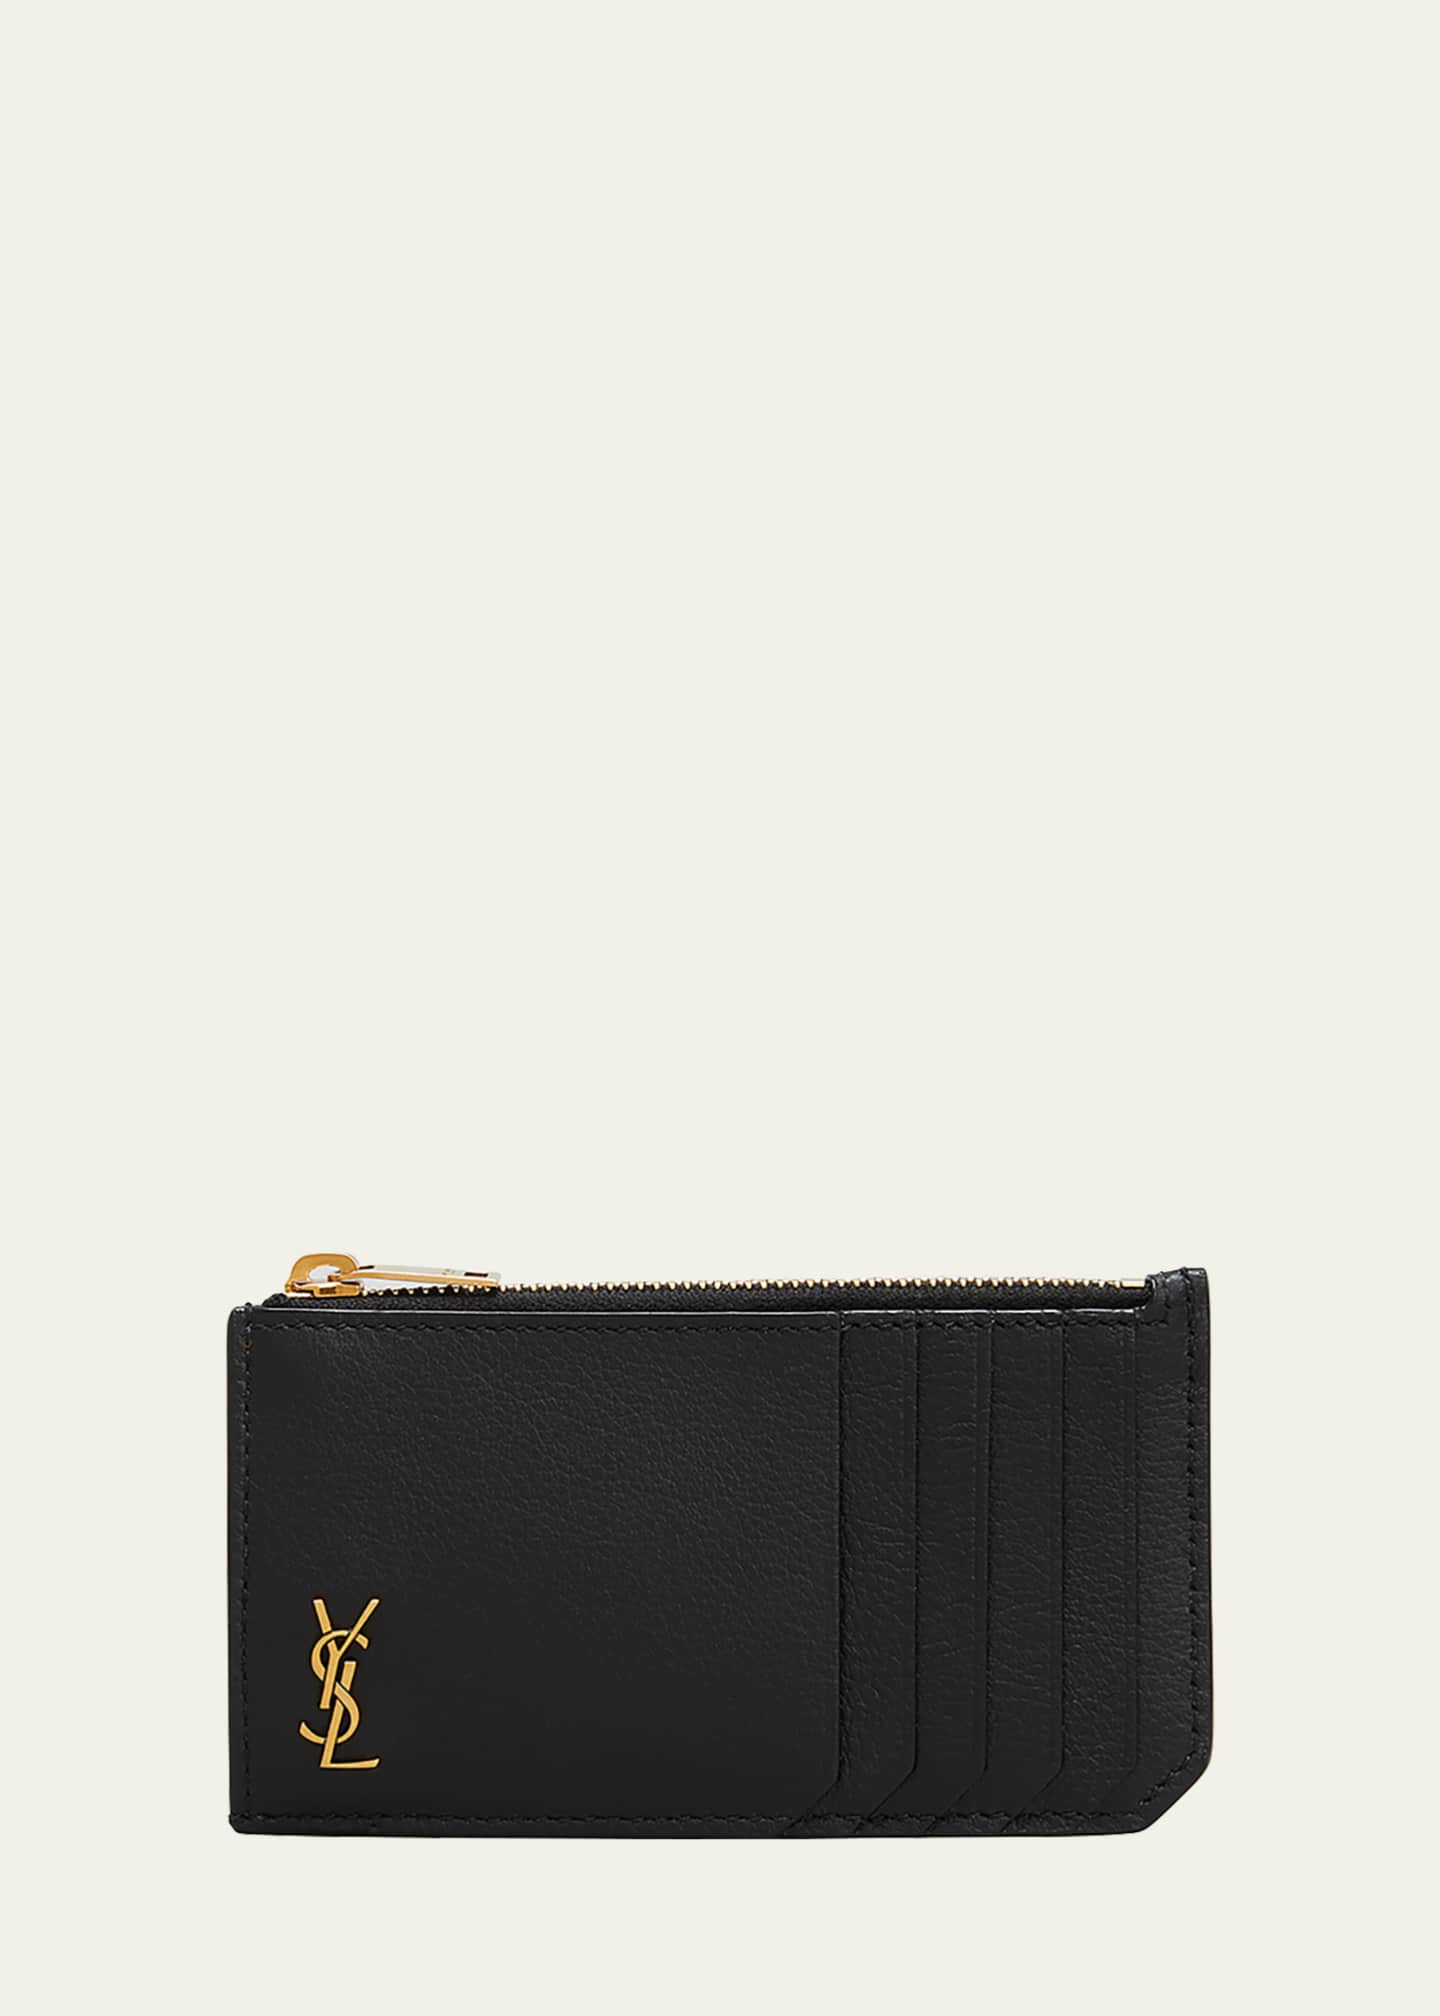 ysl wallet zipper